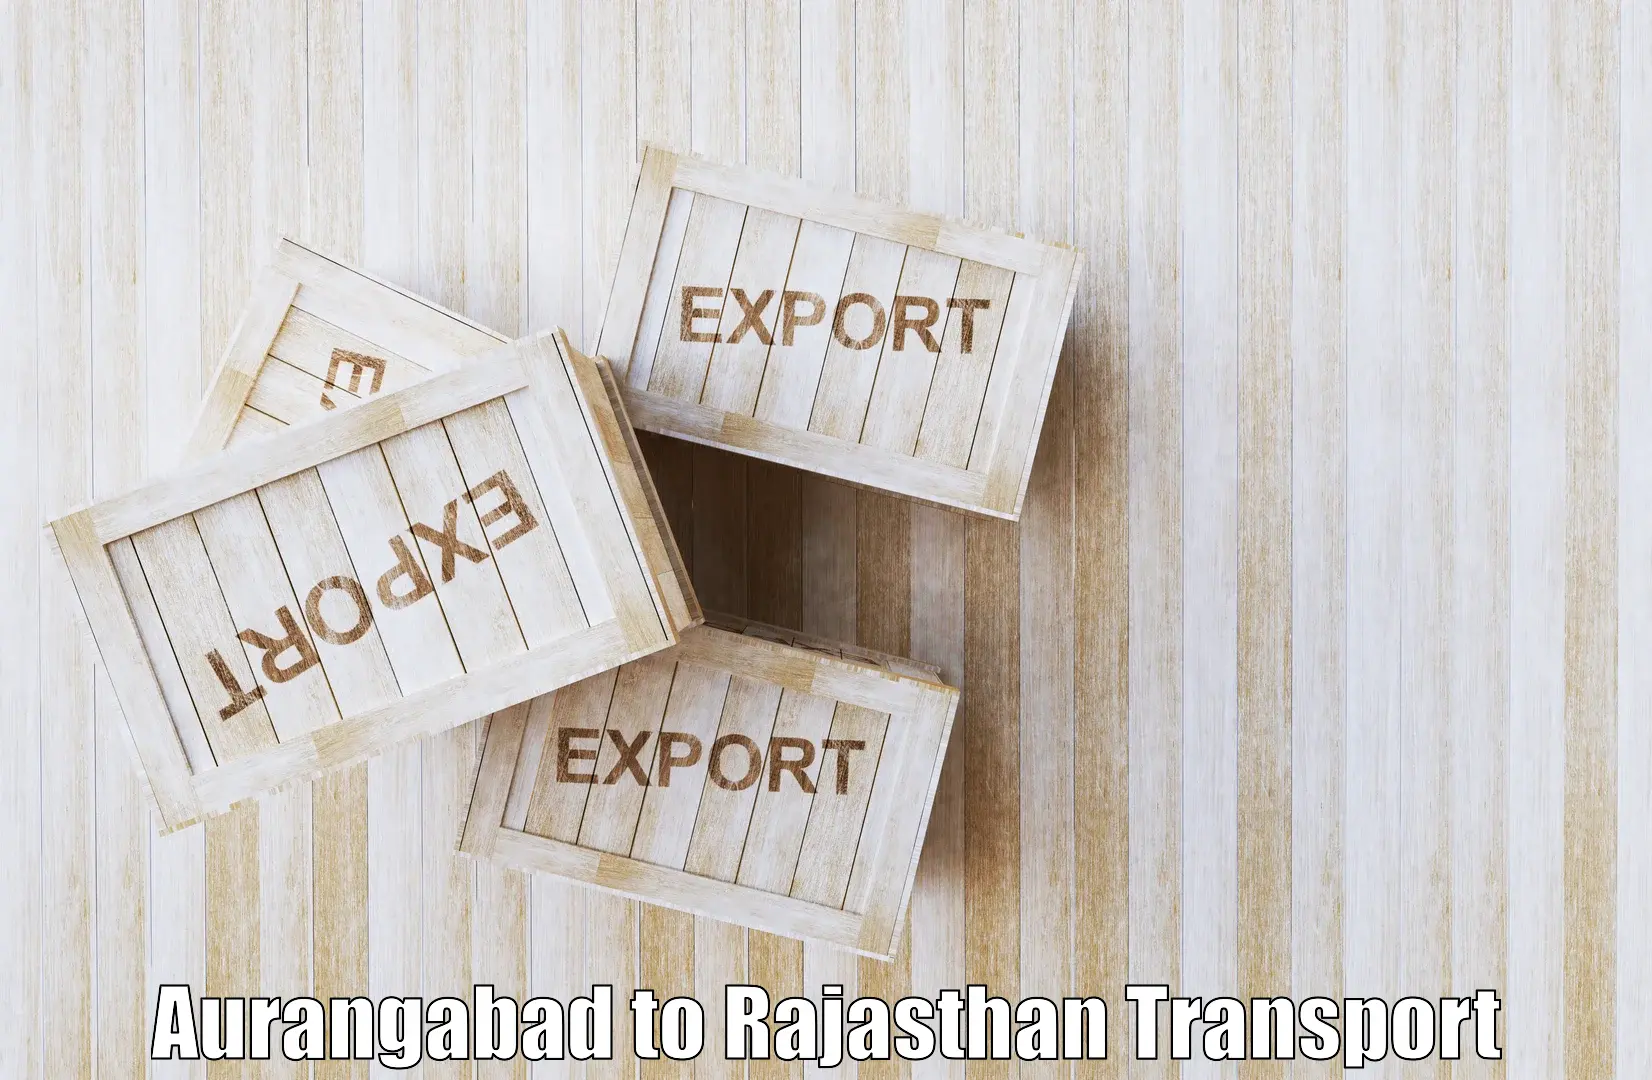 Road transport online services Aurangabad to Pokhran